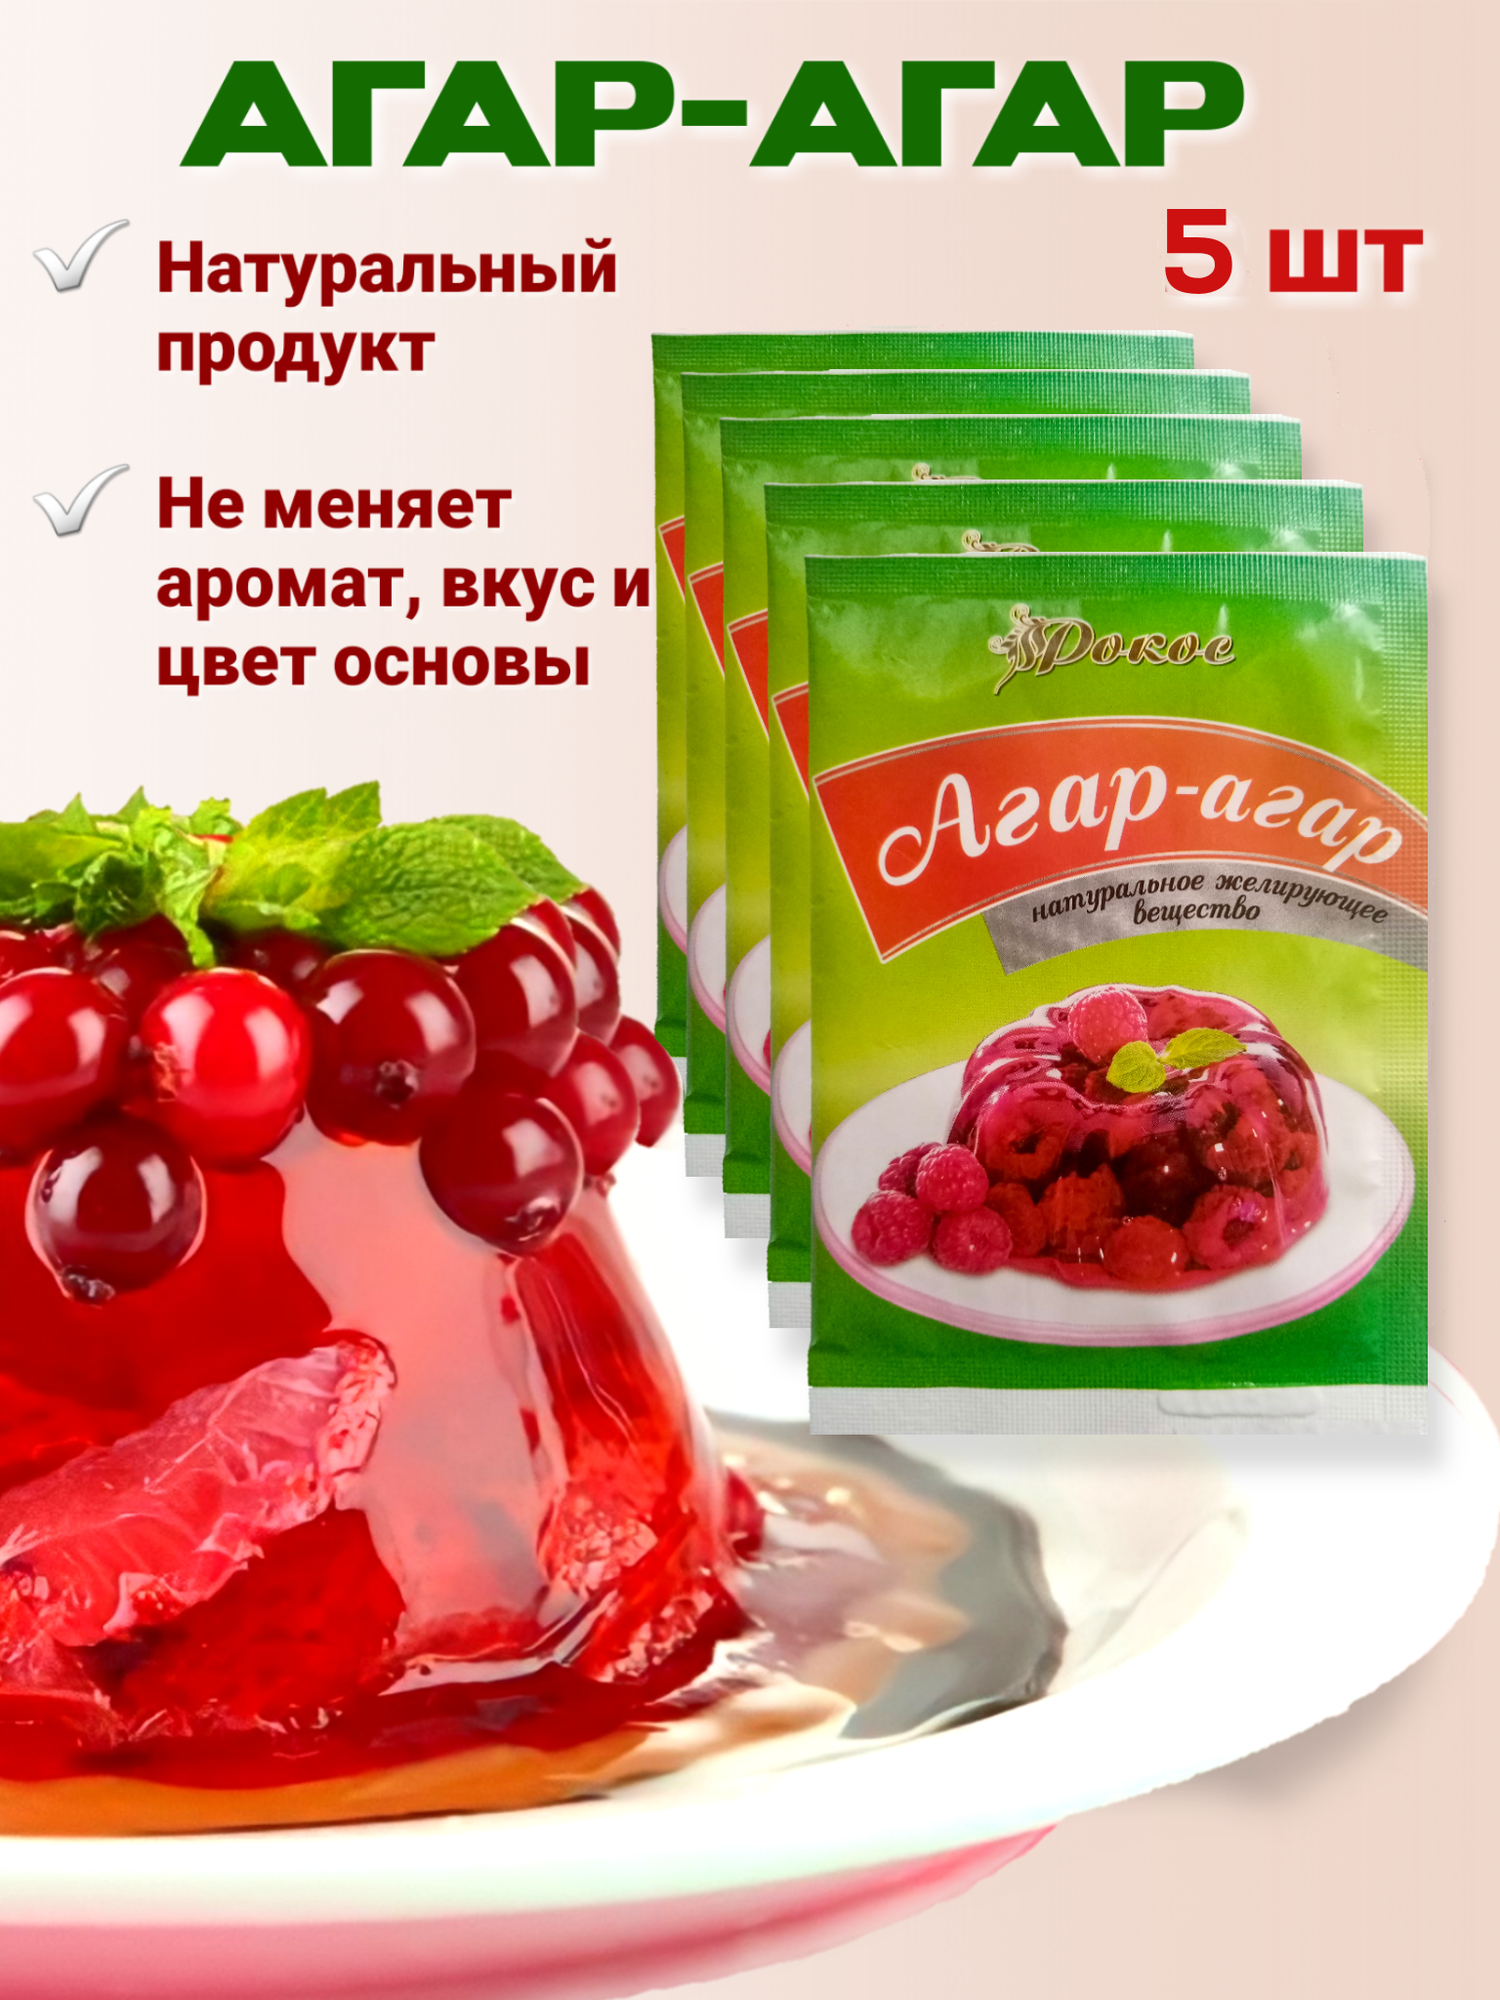 Агар агар 900 blum, натуральный пищевой загуститель, растительный аналог желатина (Е406), для кондитерских изделий (зефир, мармелад) 5 пакетиков